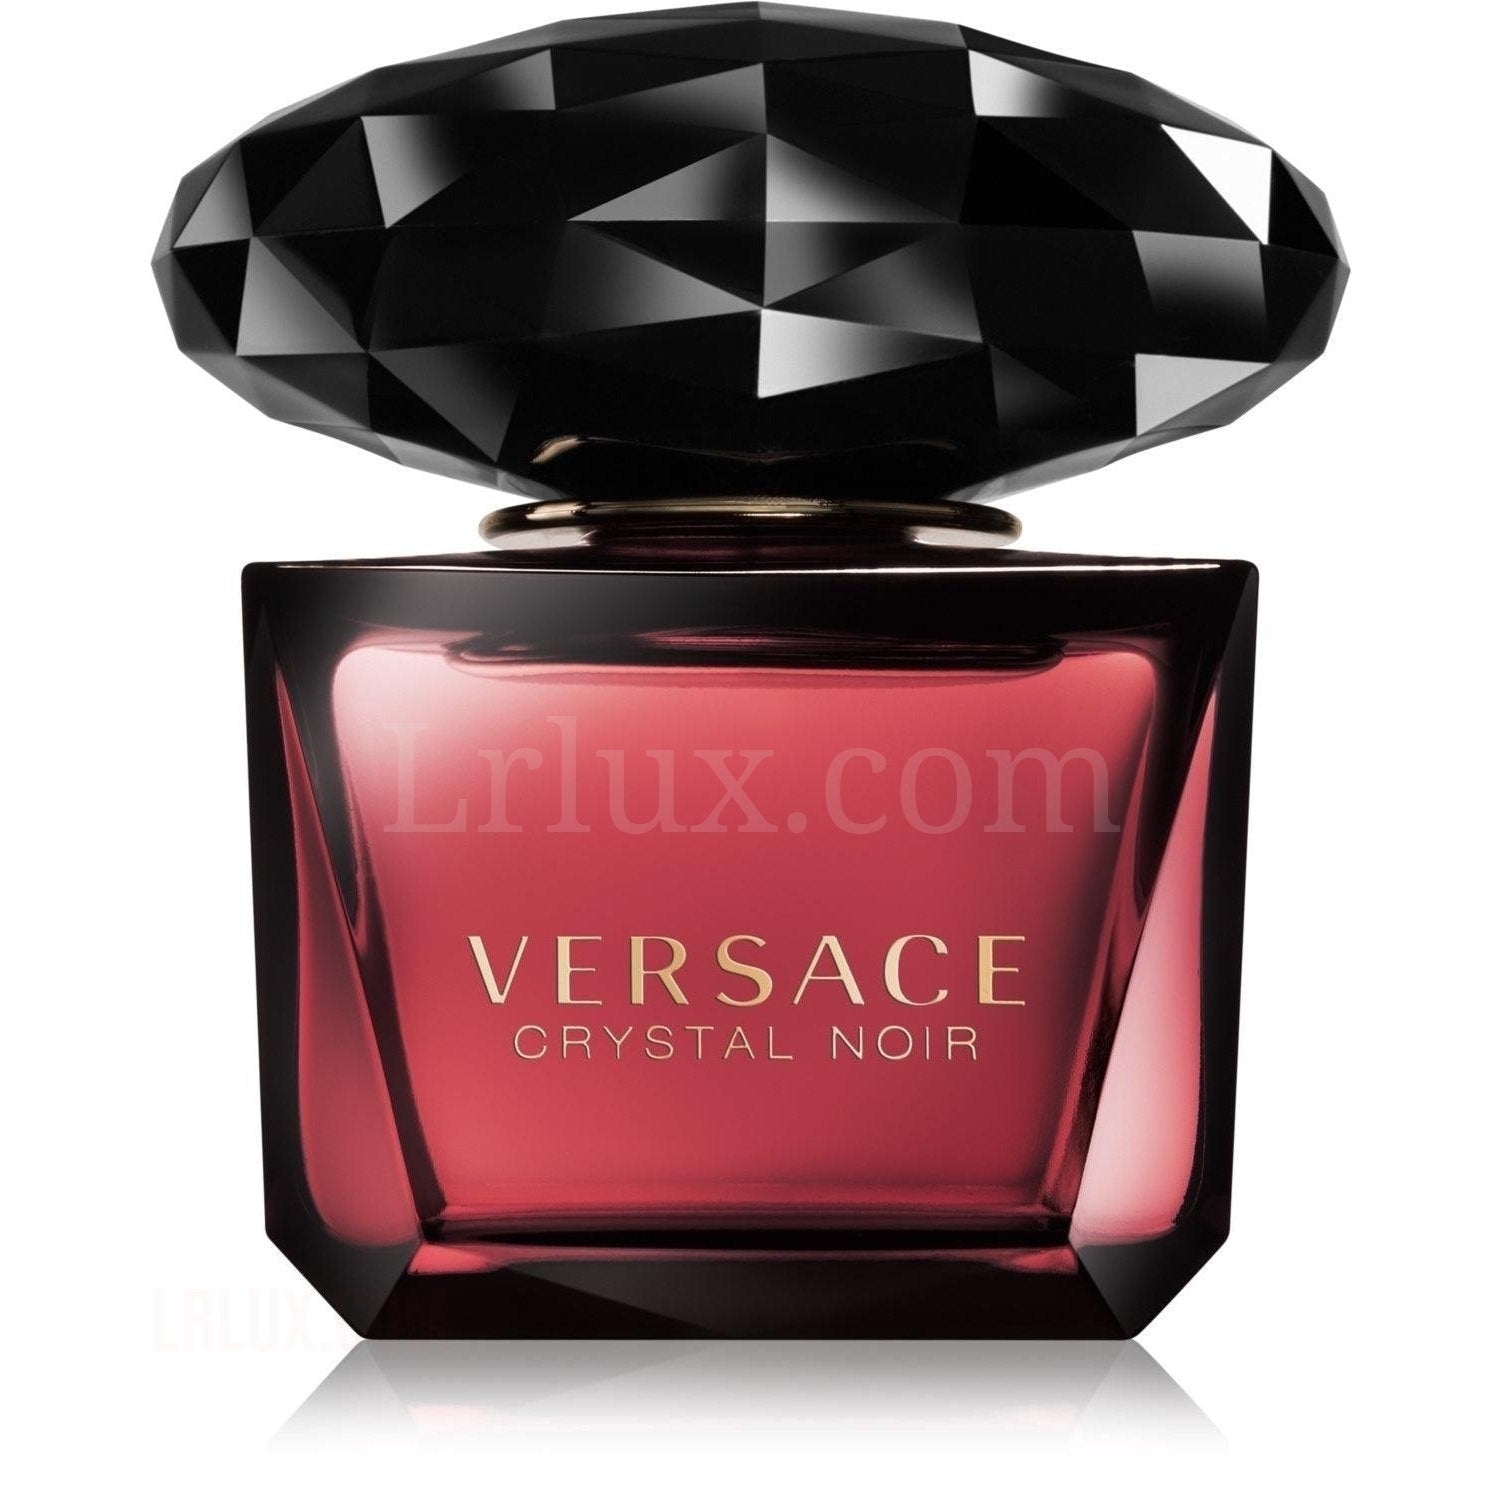 Versace Crystal Noir eau de toilette for Women - Lrlux.com